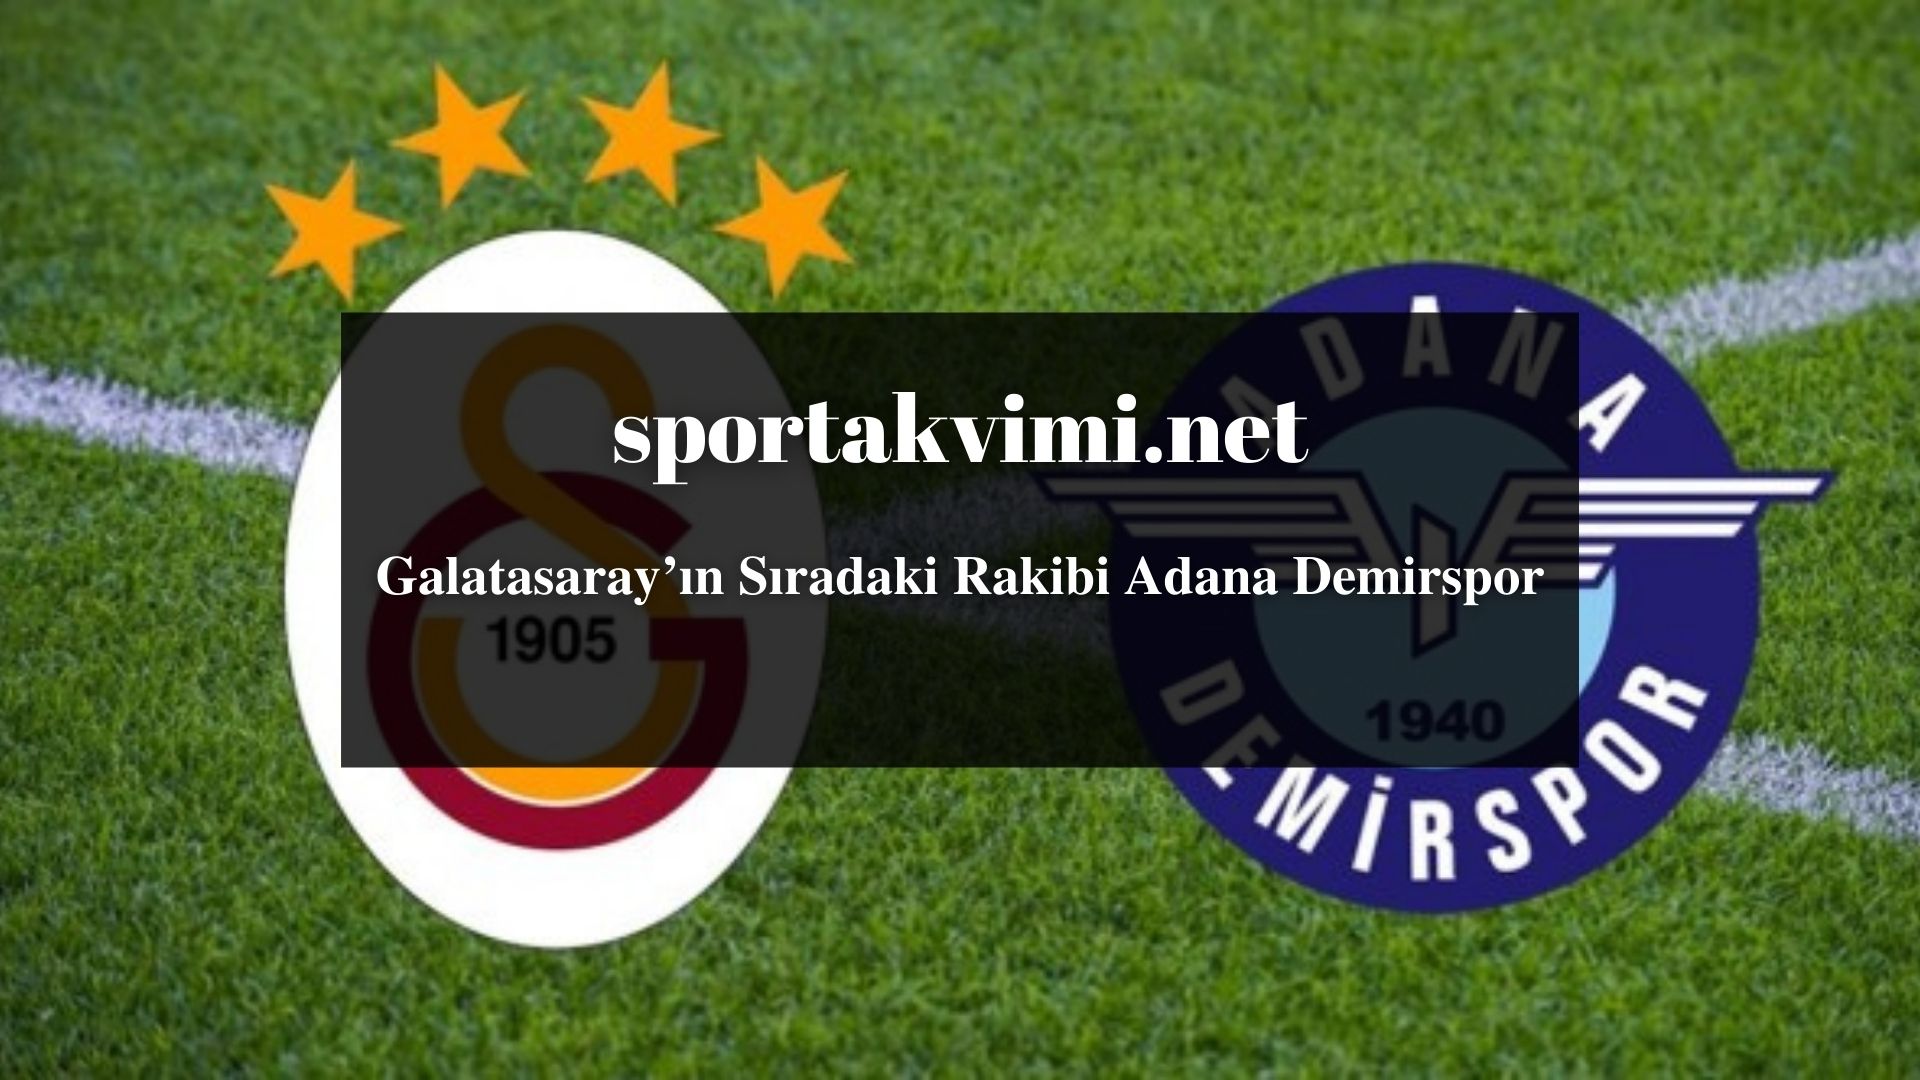 Galatasaray’ın Sıradaki Rakibi Adana Demirspor